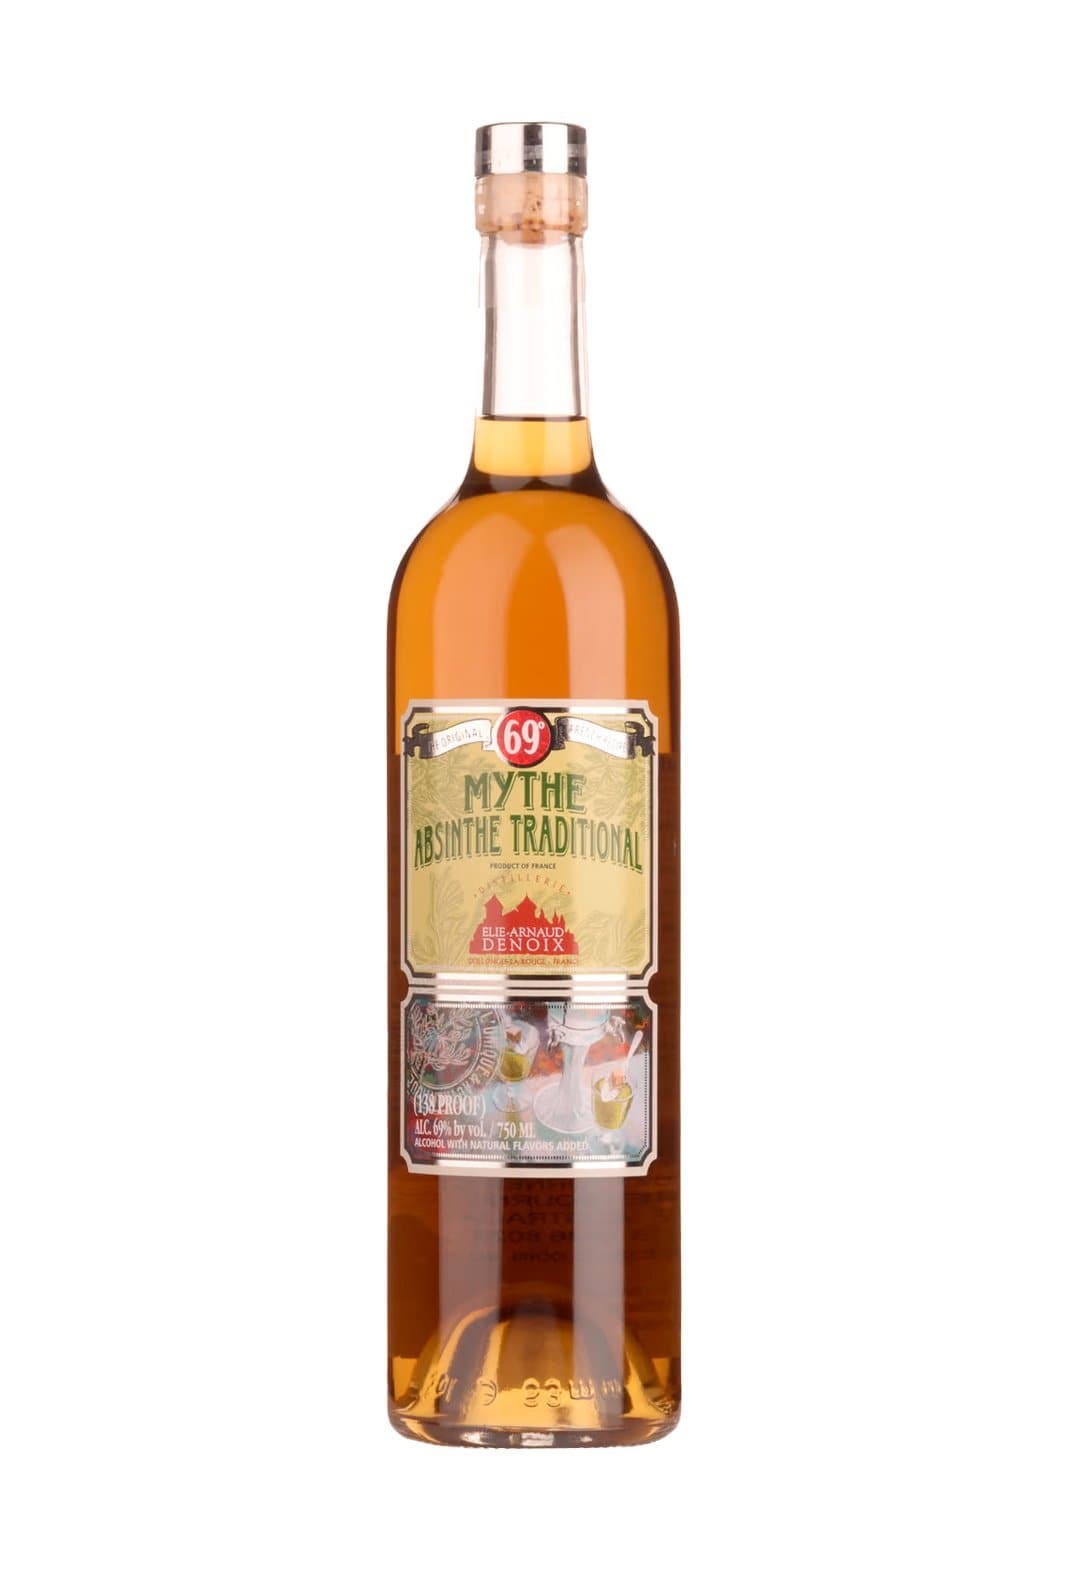 Vedrenne Elie-Arnaud Denoix Absinthe 'Mythe' Traditional Recipe 69% 750ml | Liqueurs | Shop online at Spirits of France